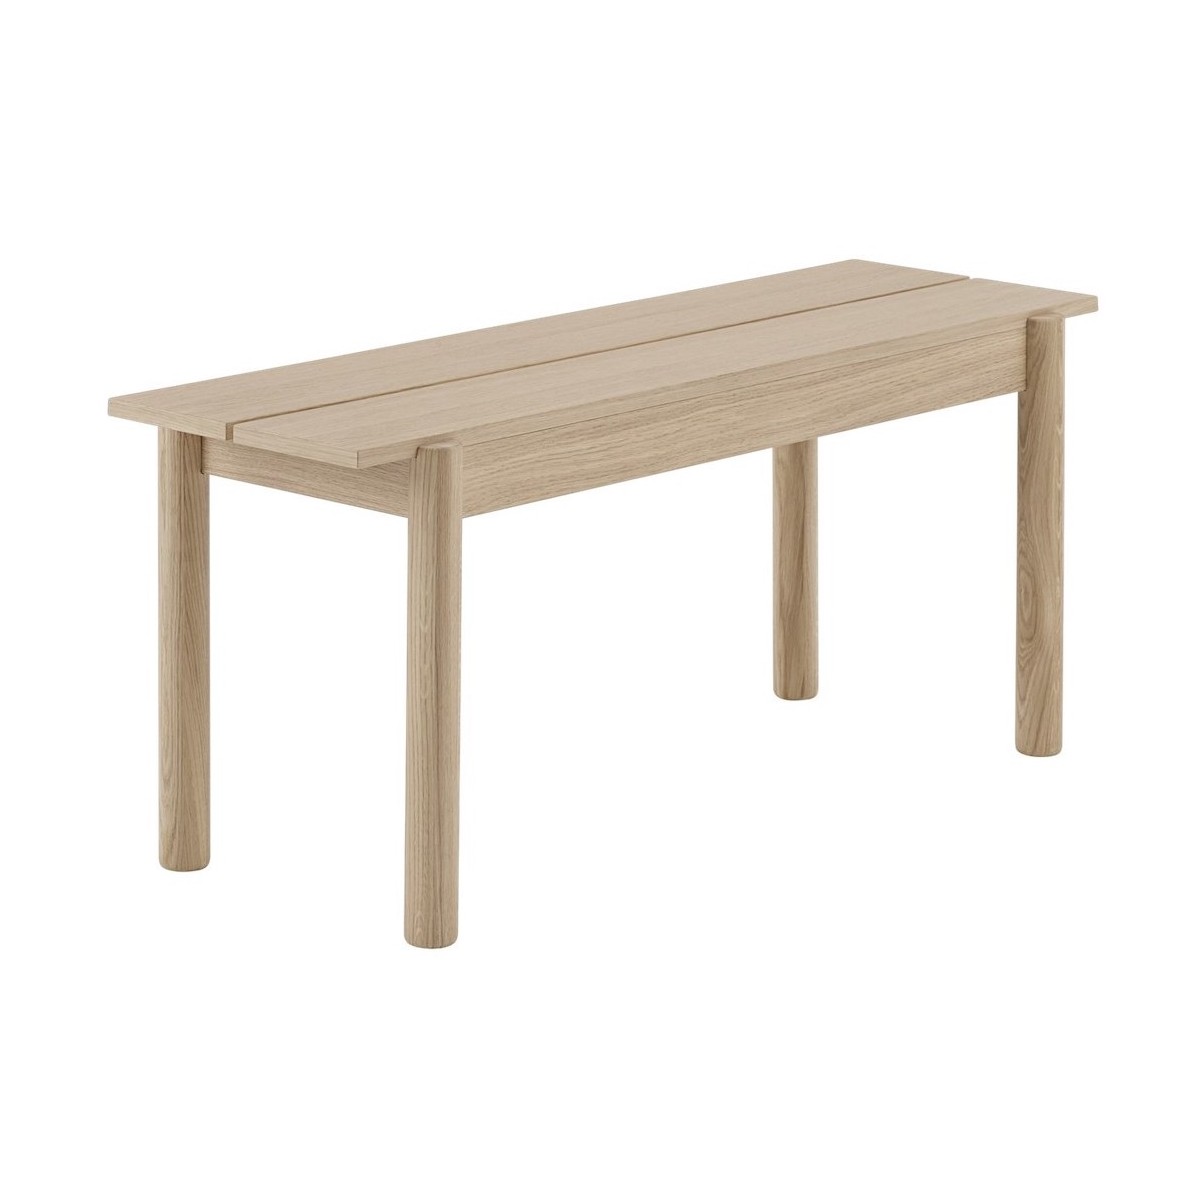 110cm oak - Linear bench